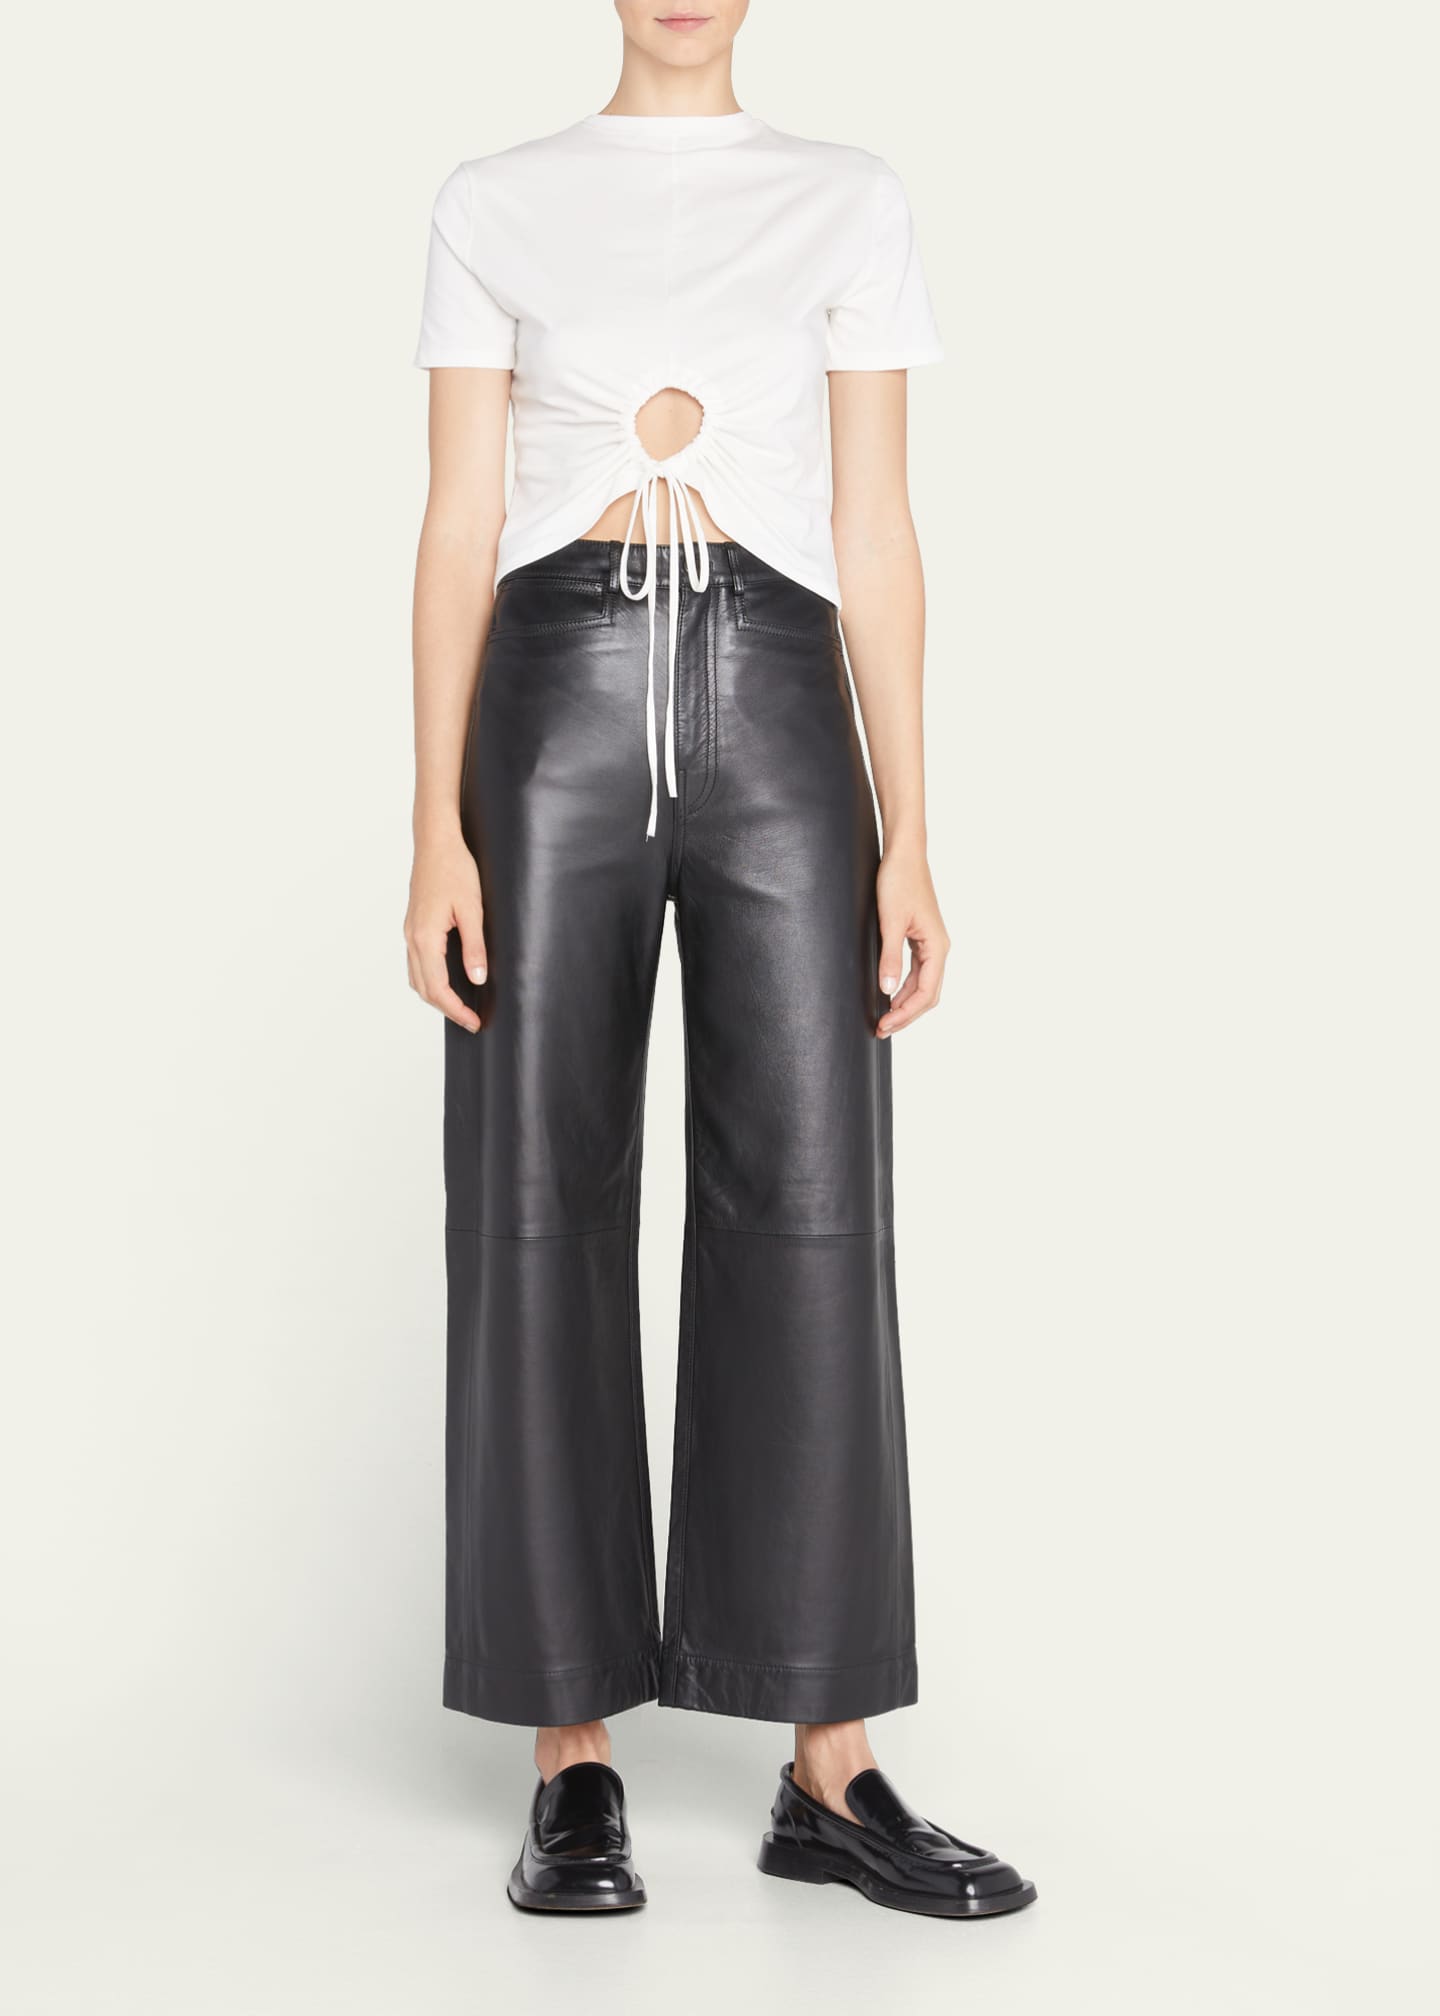 Proenza Schouler White Label High-Rise Leather Culottes - Bergdorf Goodman